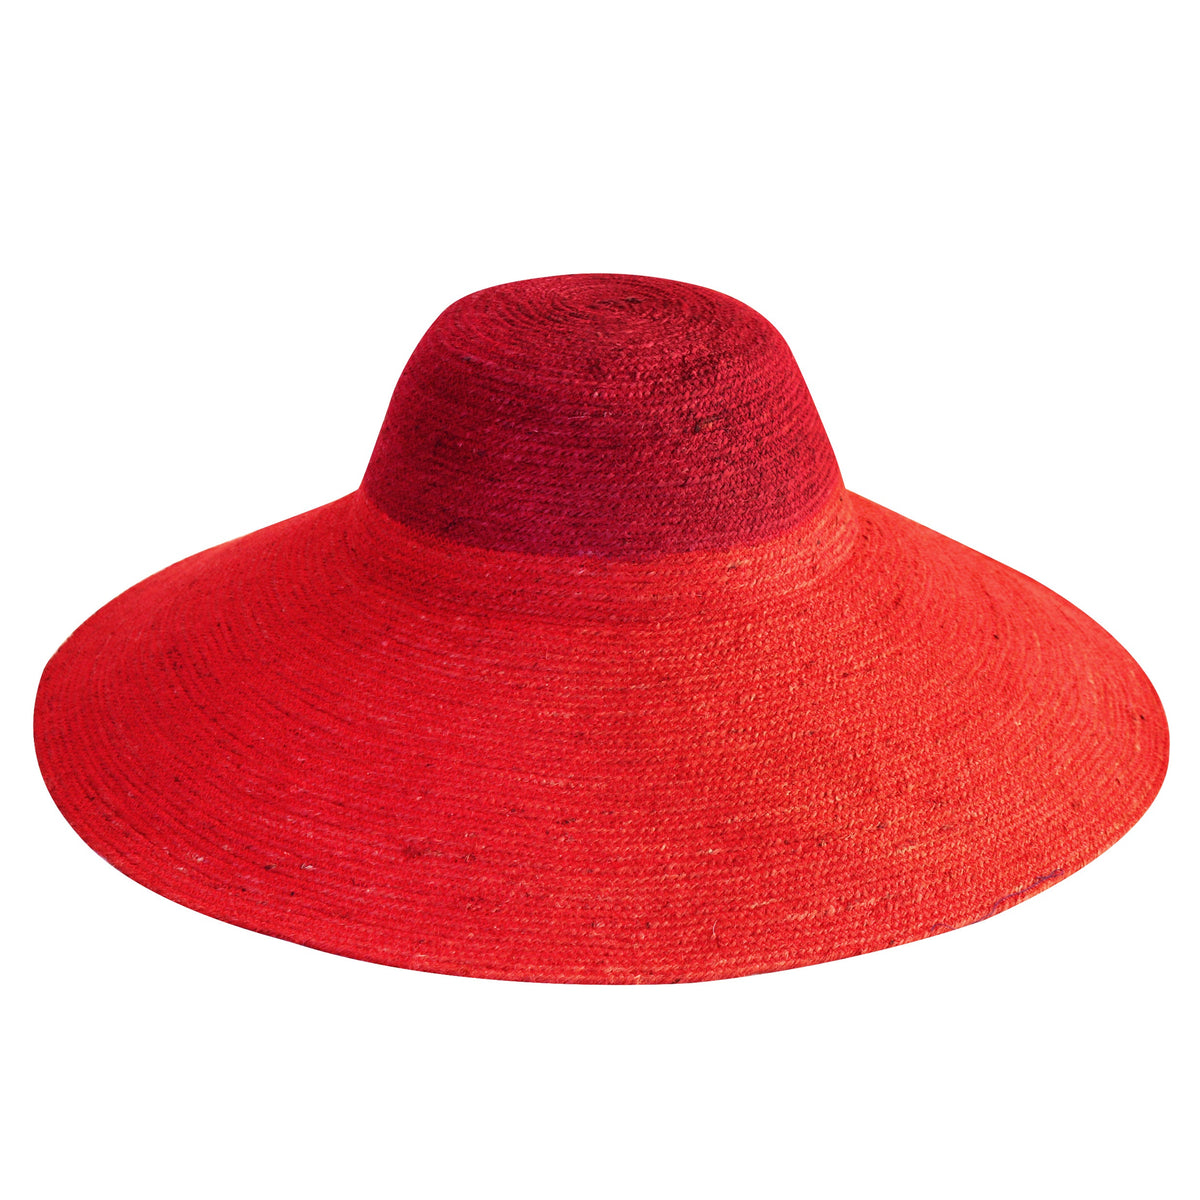 RIRI DUO Jute Straw Hat, in Maroon &amp; Red by BrunnaCo